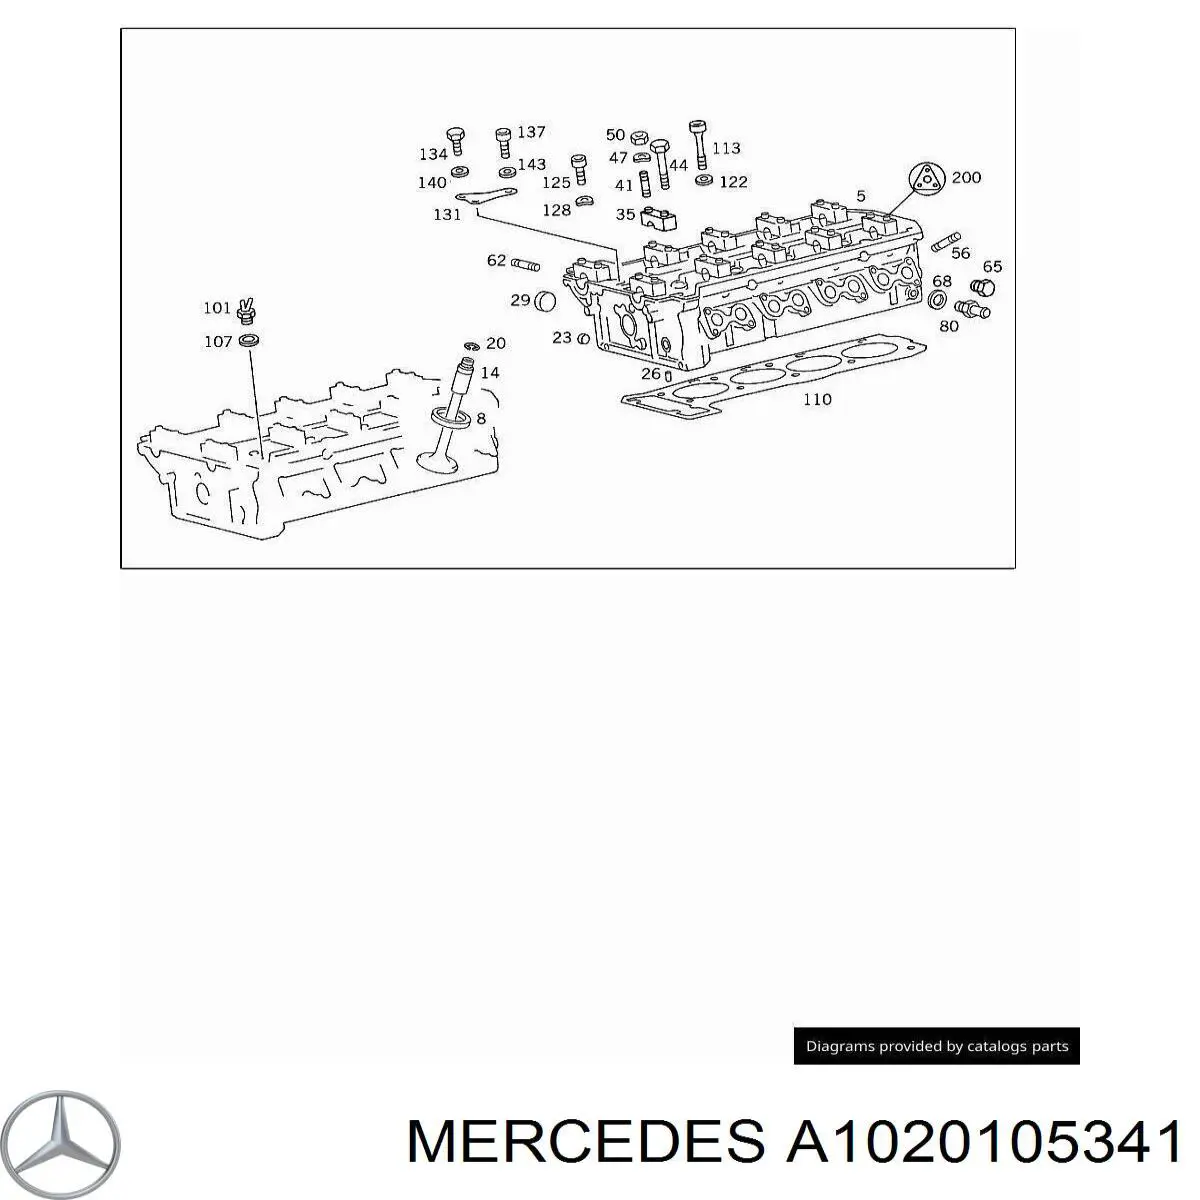 A1020105341 Mercedes комплект прокладок двигателя верхний